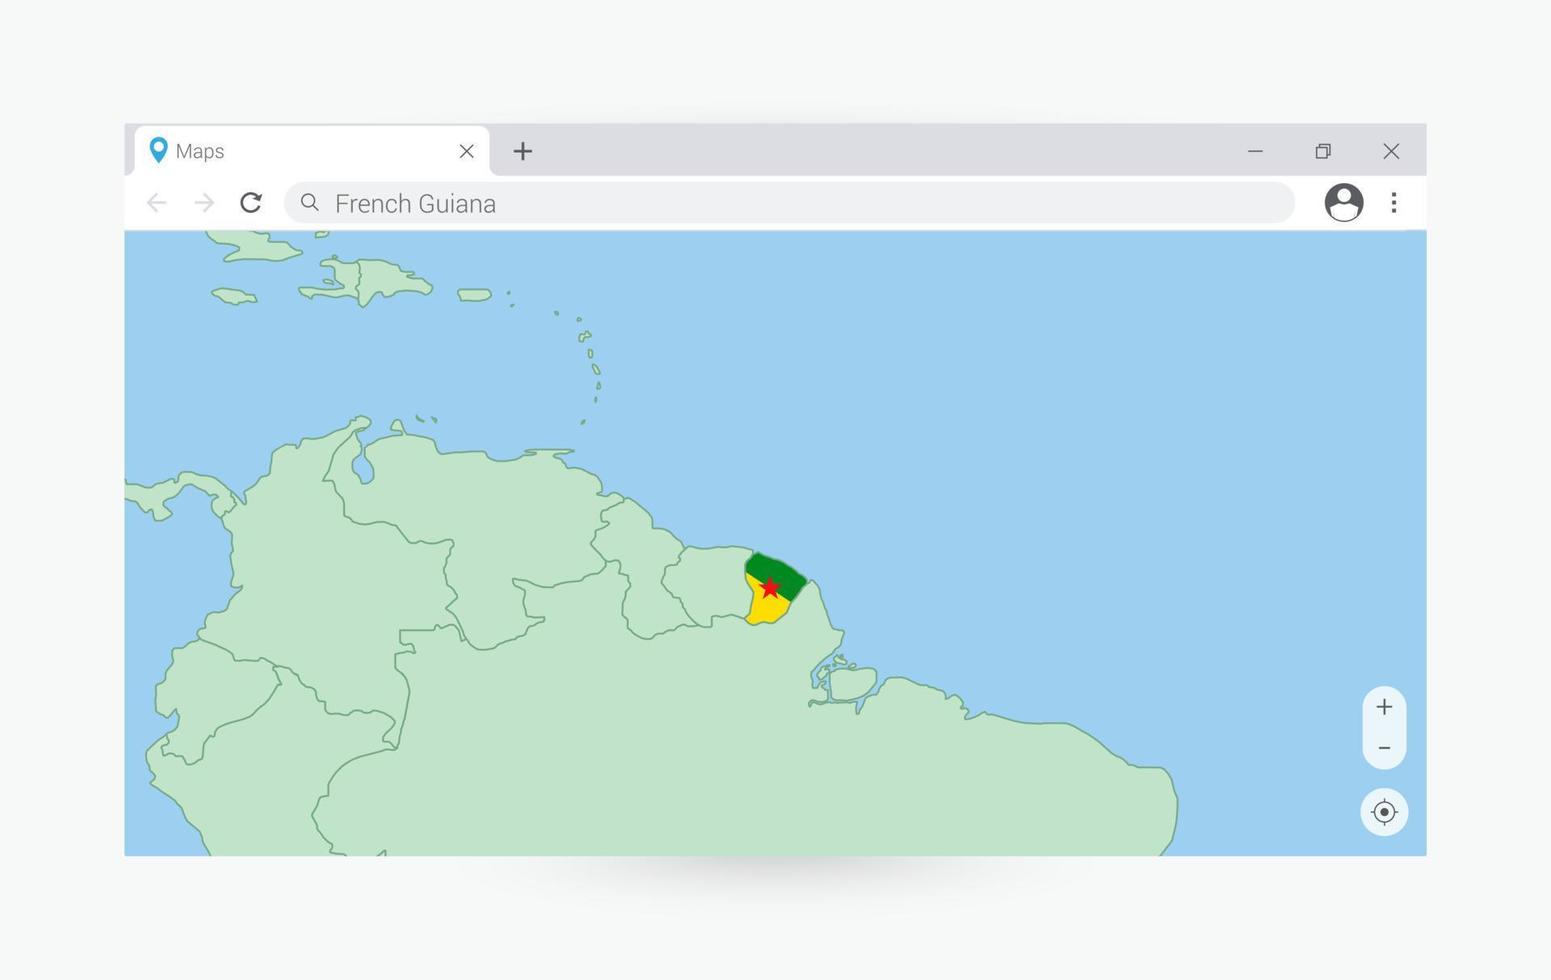 navigateur fenêtre avec carte de français Guyane, recherche français Guyane dans l'Internet. vecteur